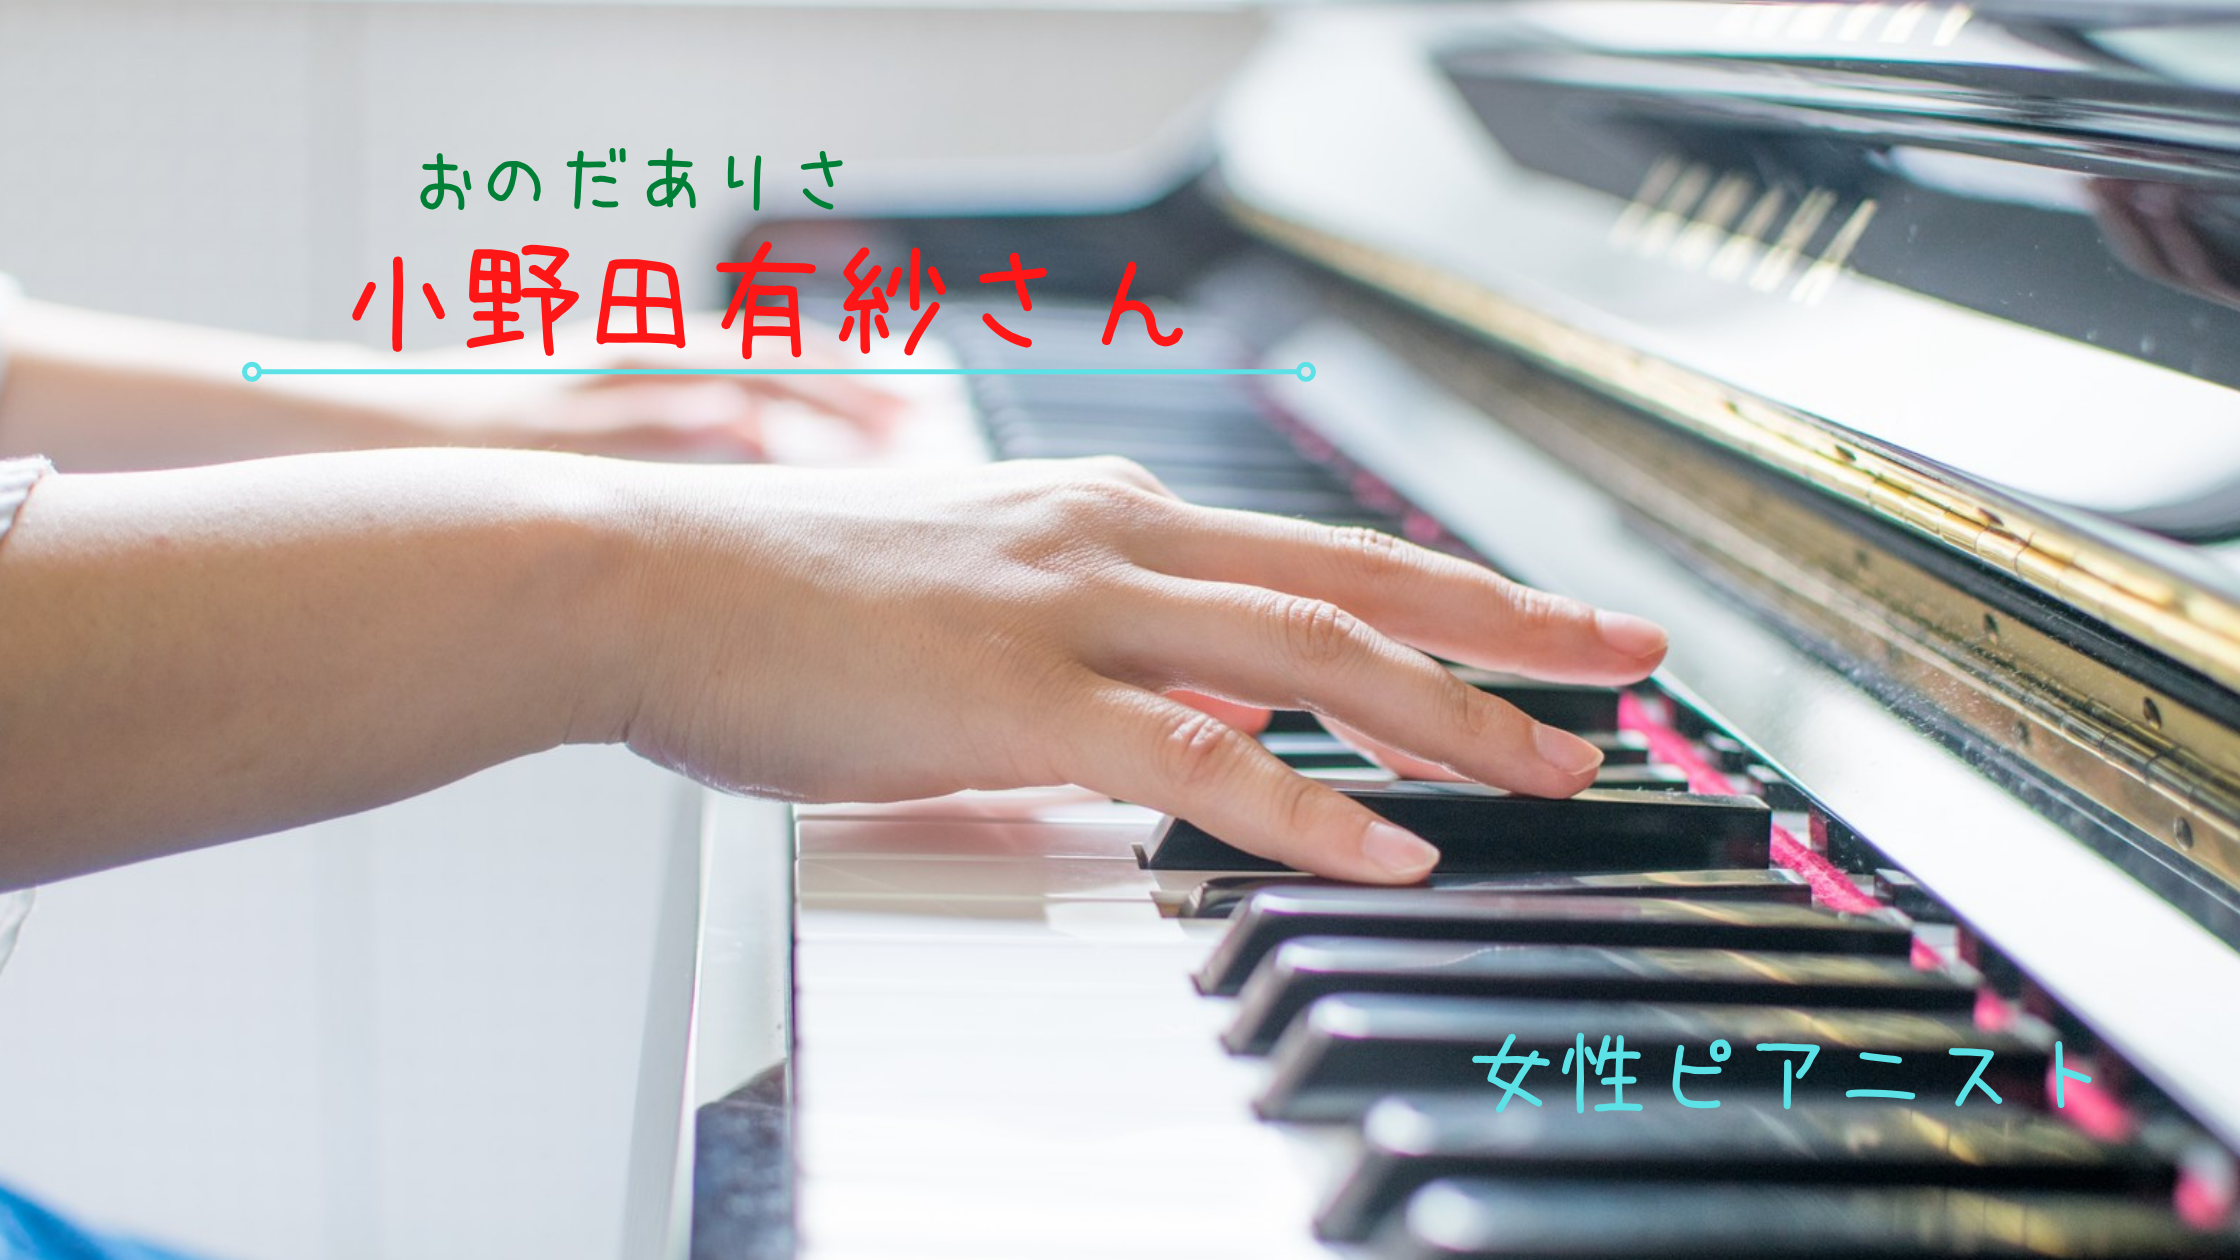 小野田有紗は天才 学歴や経歴は 関ジャニや世界のスゴ大に出た方 ピアノ みっちょりーぬの幅広い音楽